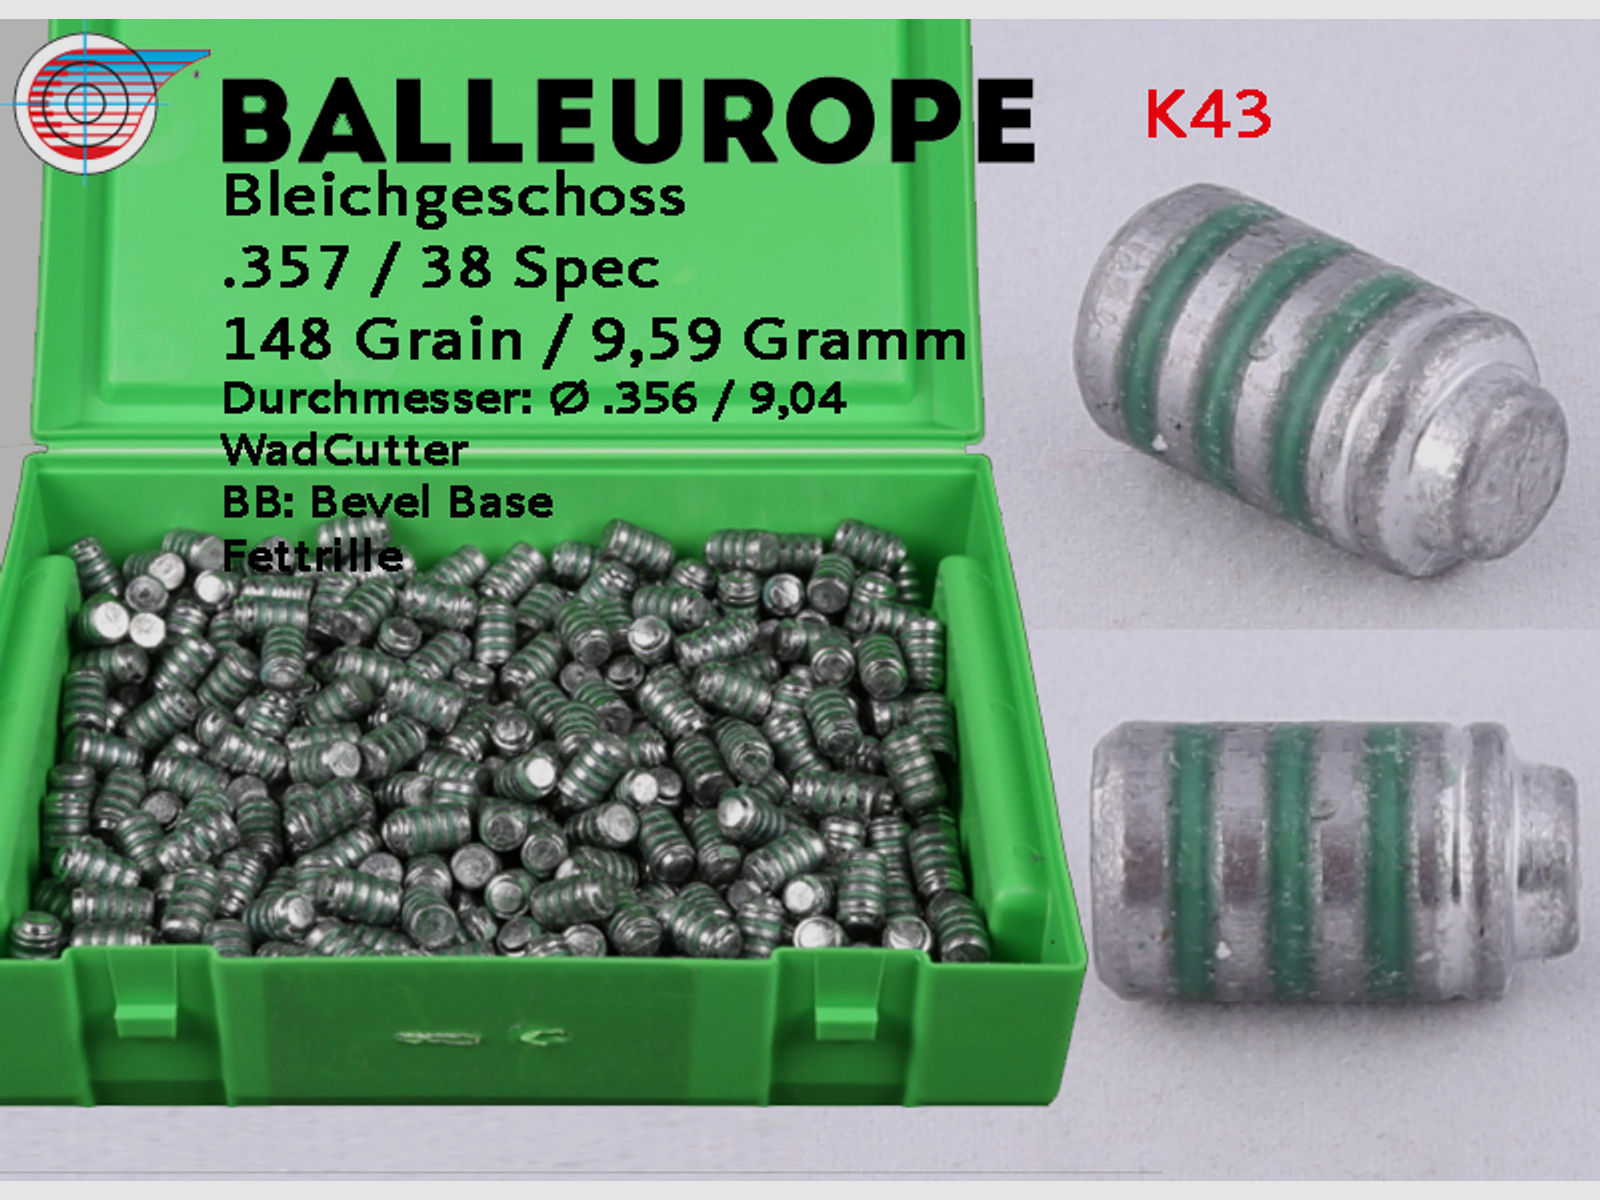 500 Geschoße .38 Special: Ø.356 / 9,04mm 148 Grain Crimprille, Fettrille Wadcutter BB Balleurope K43